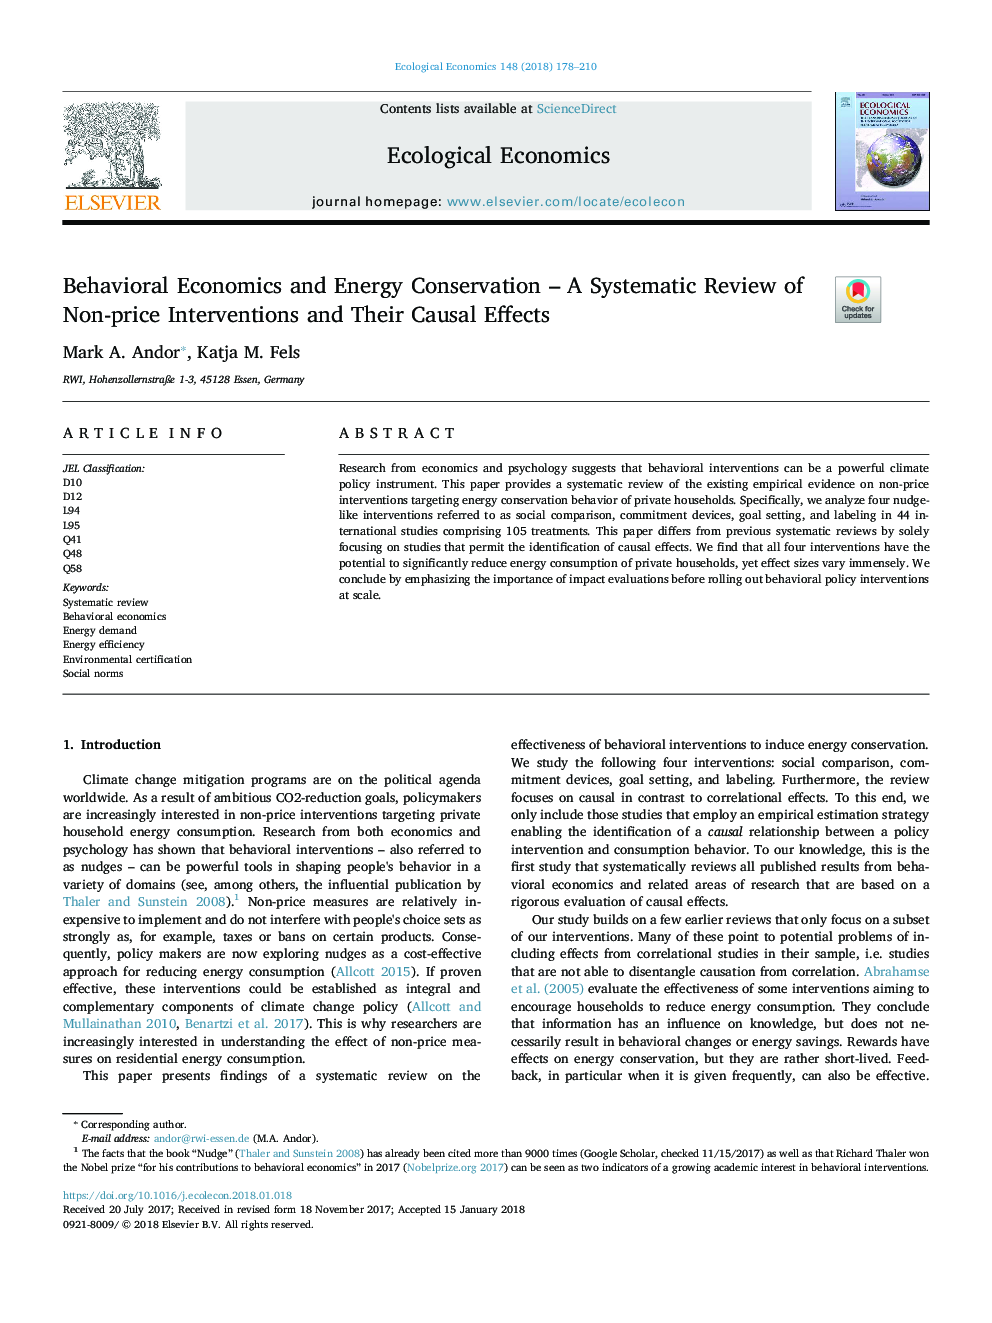 اقتصاد رفتاری و حفاظت از انرژی - بررسی سیستماتیک مداخلات غیر قیمت و تاثیرات آنها 